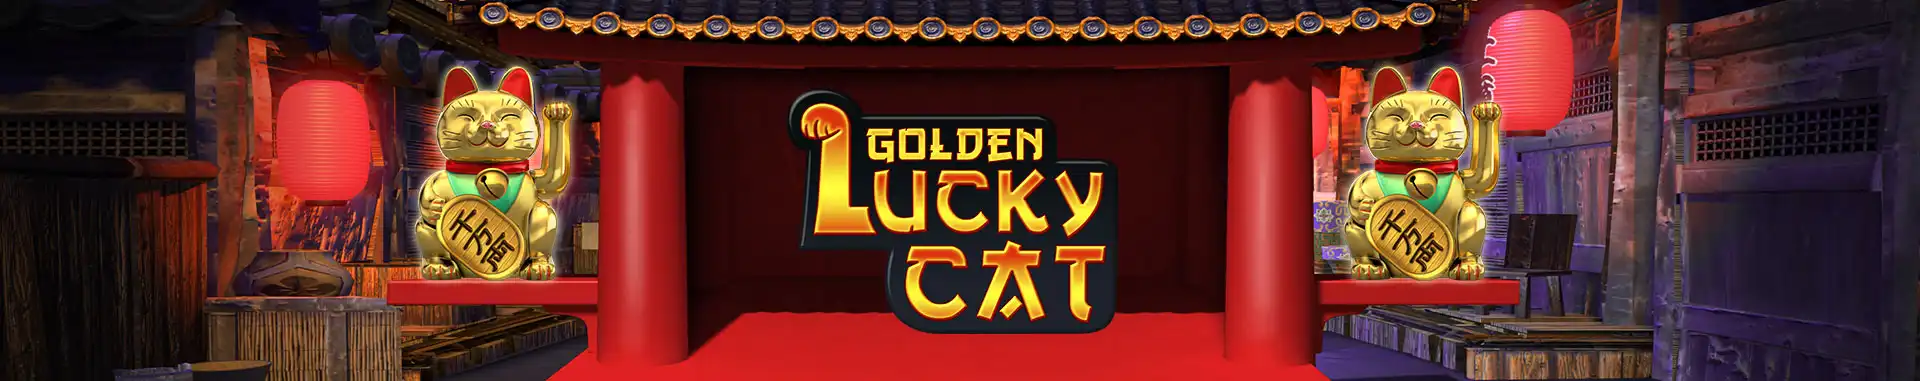 Video Bingo Online Golden Lucky Cat